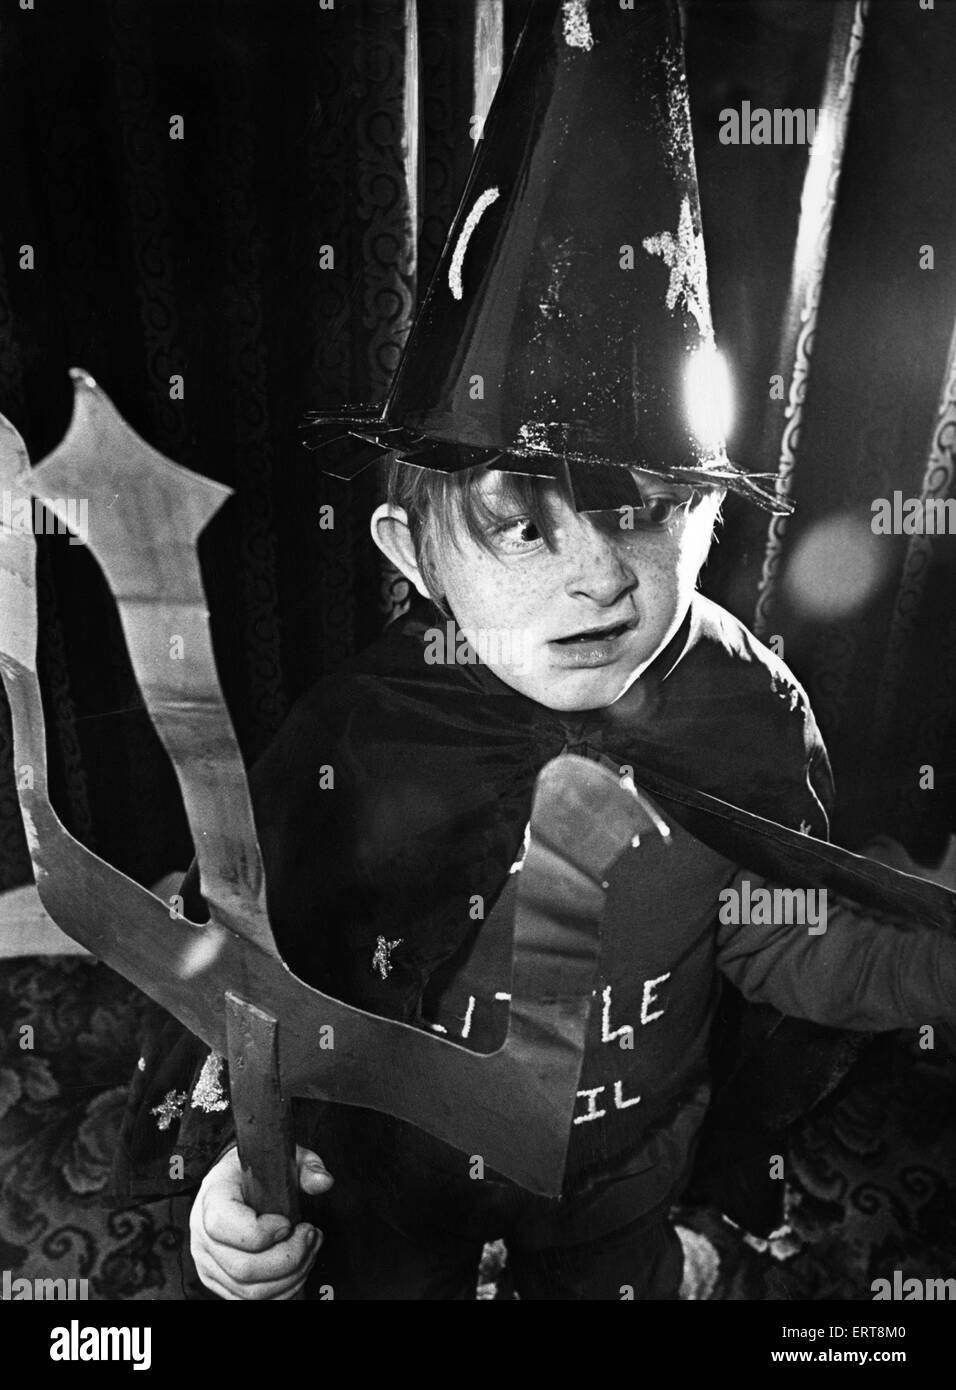 Sechs Jahre alte Paul Davison bekommt in den Geist von Halloween mit seinem gruseligen Kostüm. Seine grausige Fratze ist ein Training für die Halloween-Party der Billingham-Karneval-Vereinigung. 31. Oktober 1978 Stockfoto